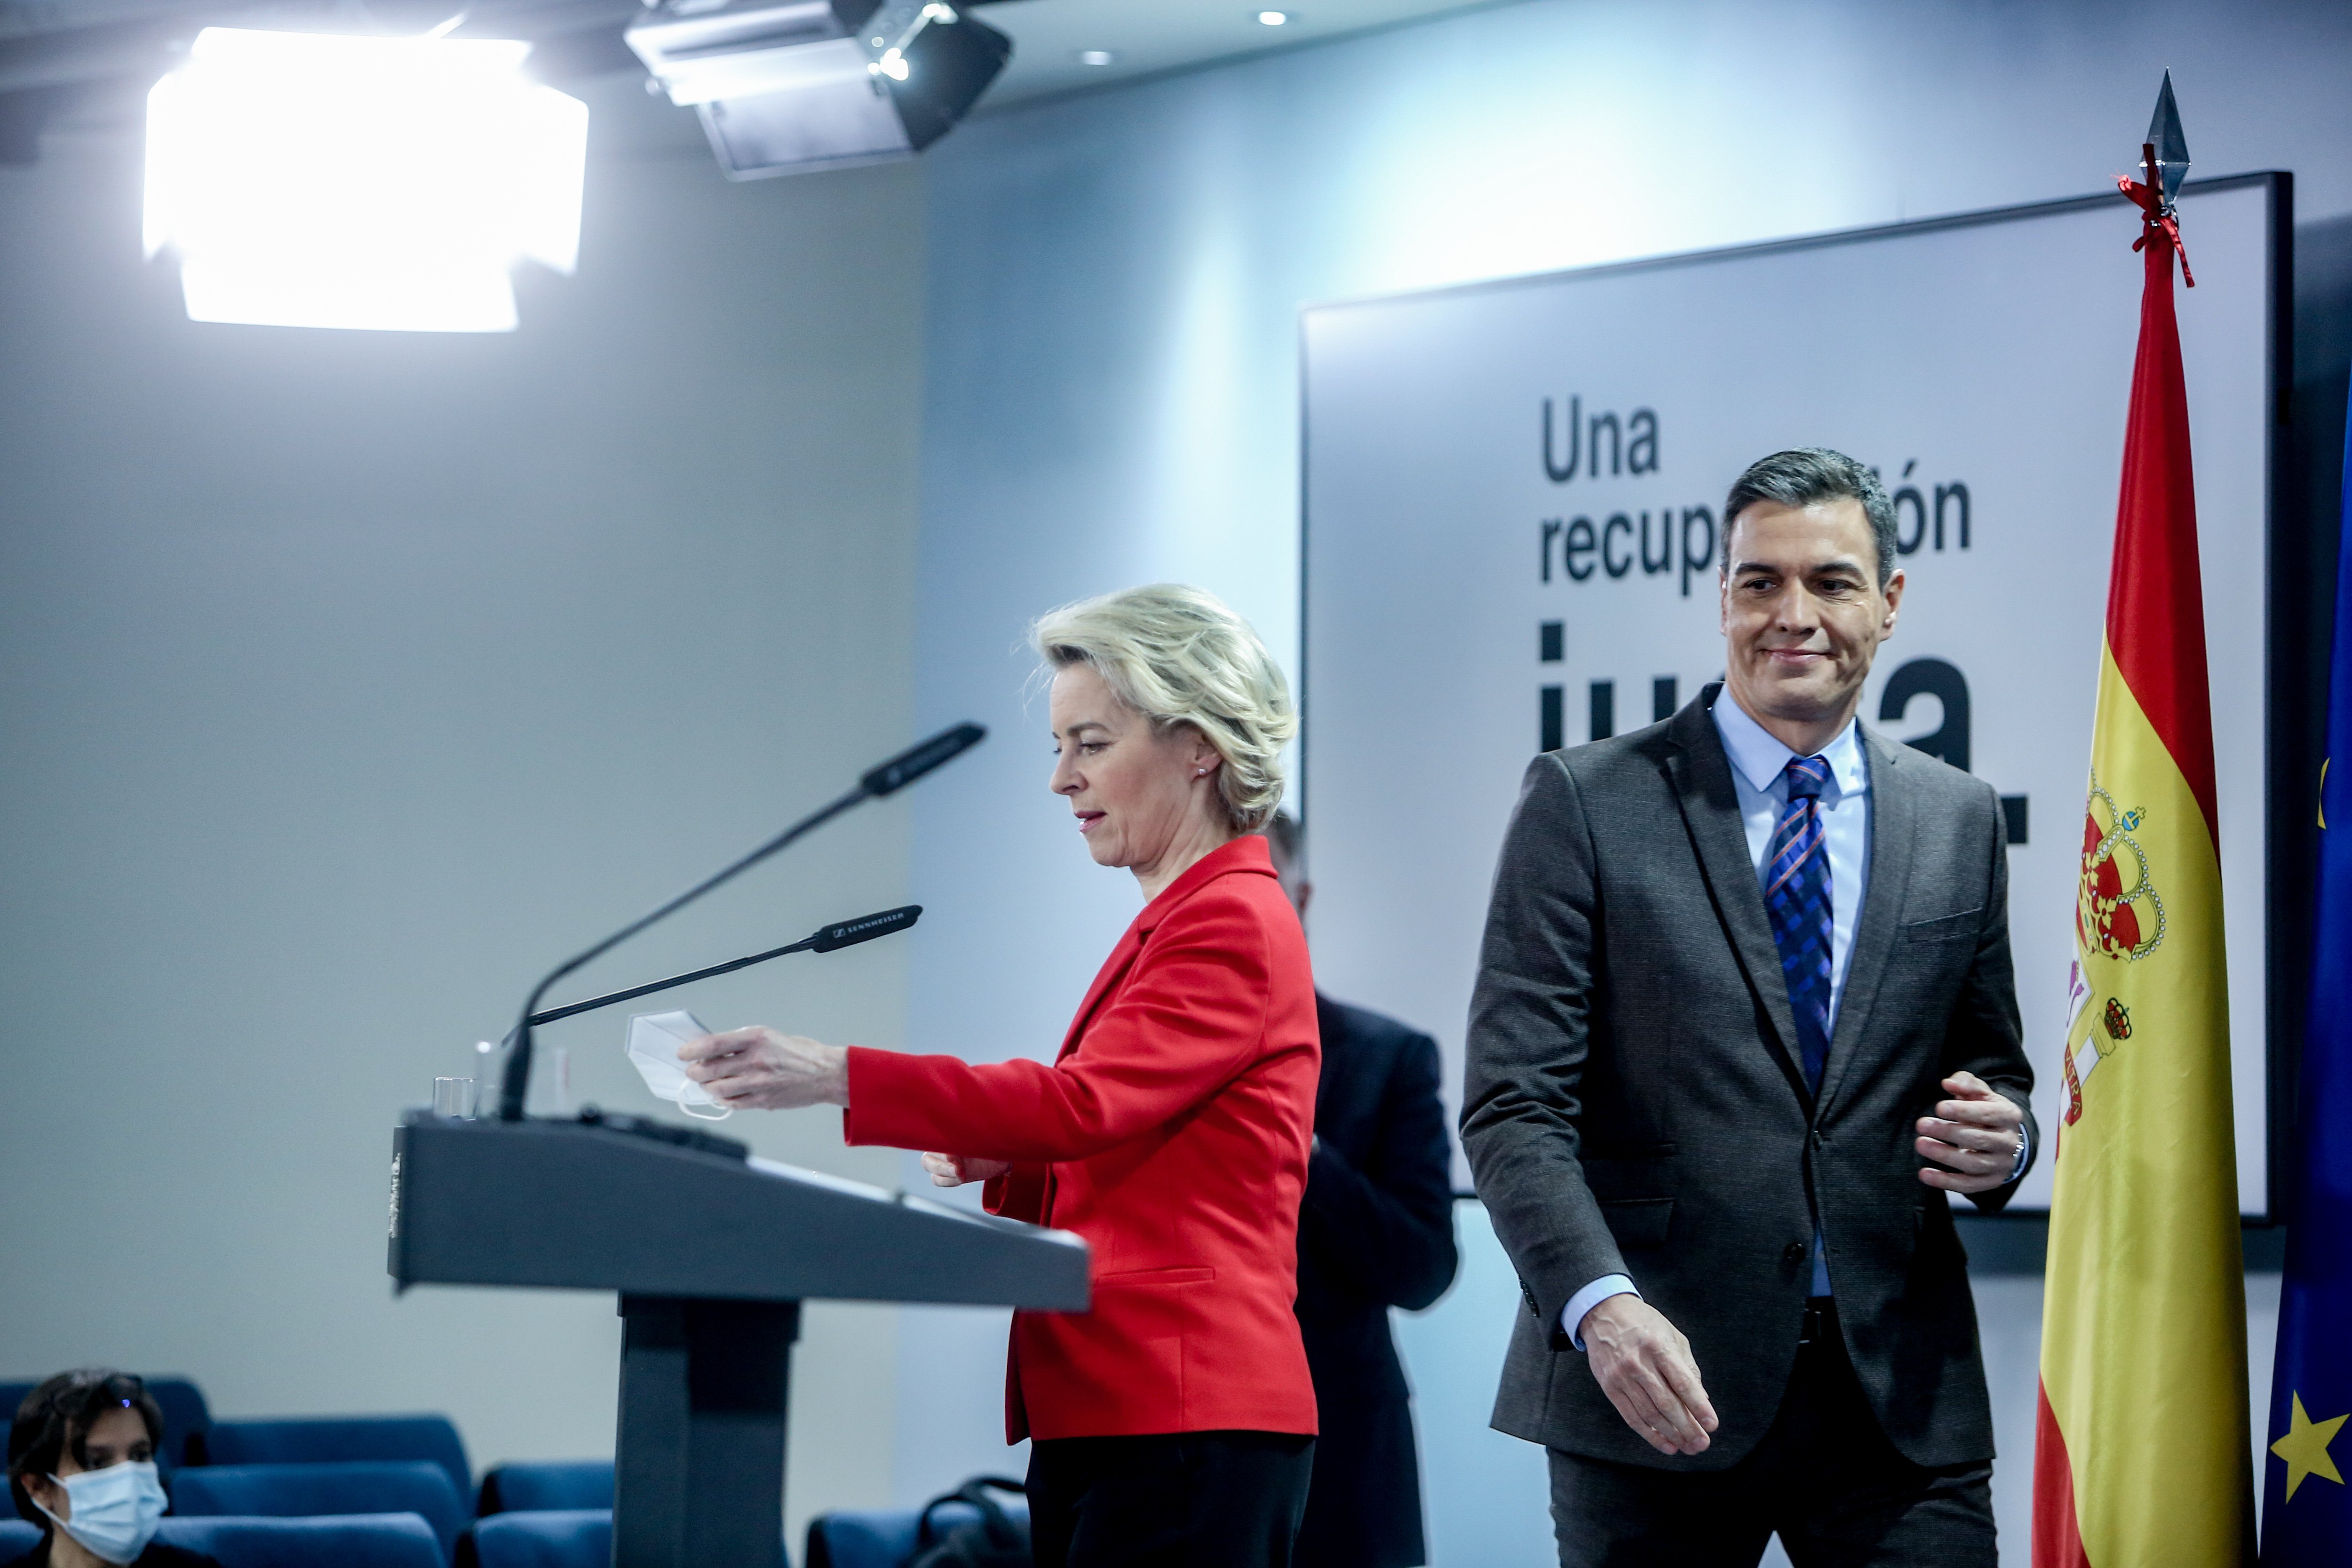 La CE bloquejarà els fons europeus a Espanya si Sánchez no compleix les promeses